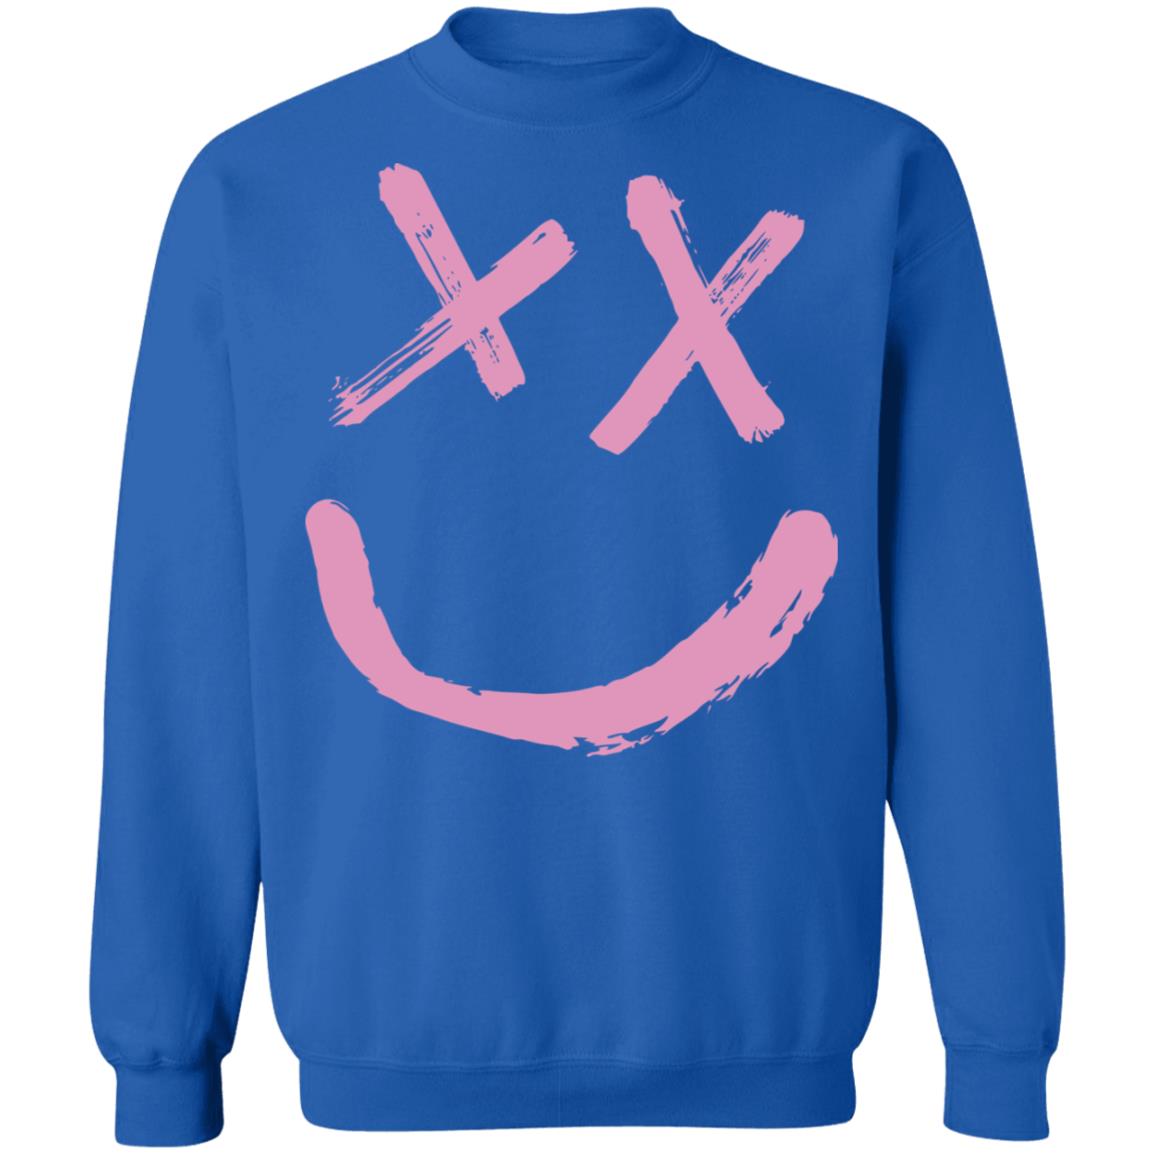 pink louis tomlinson walls sweatshirt